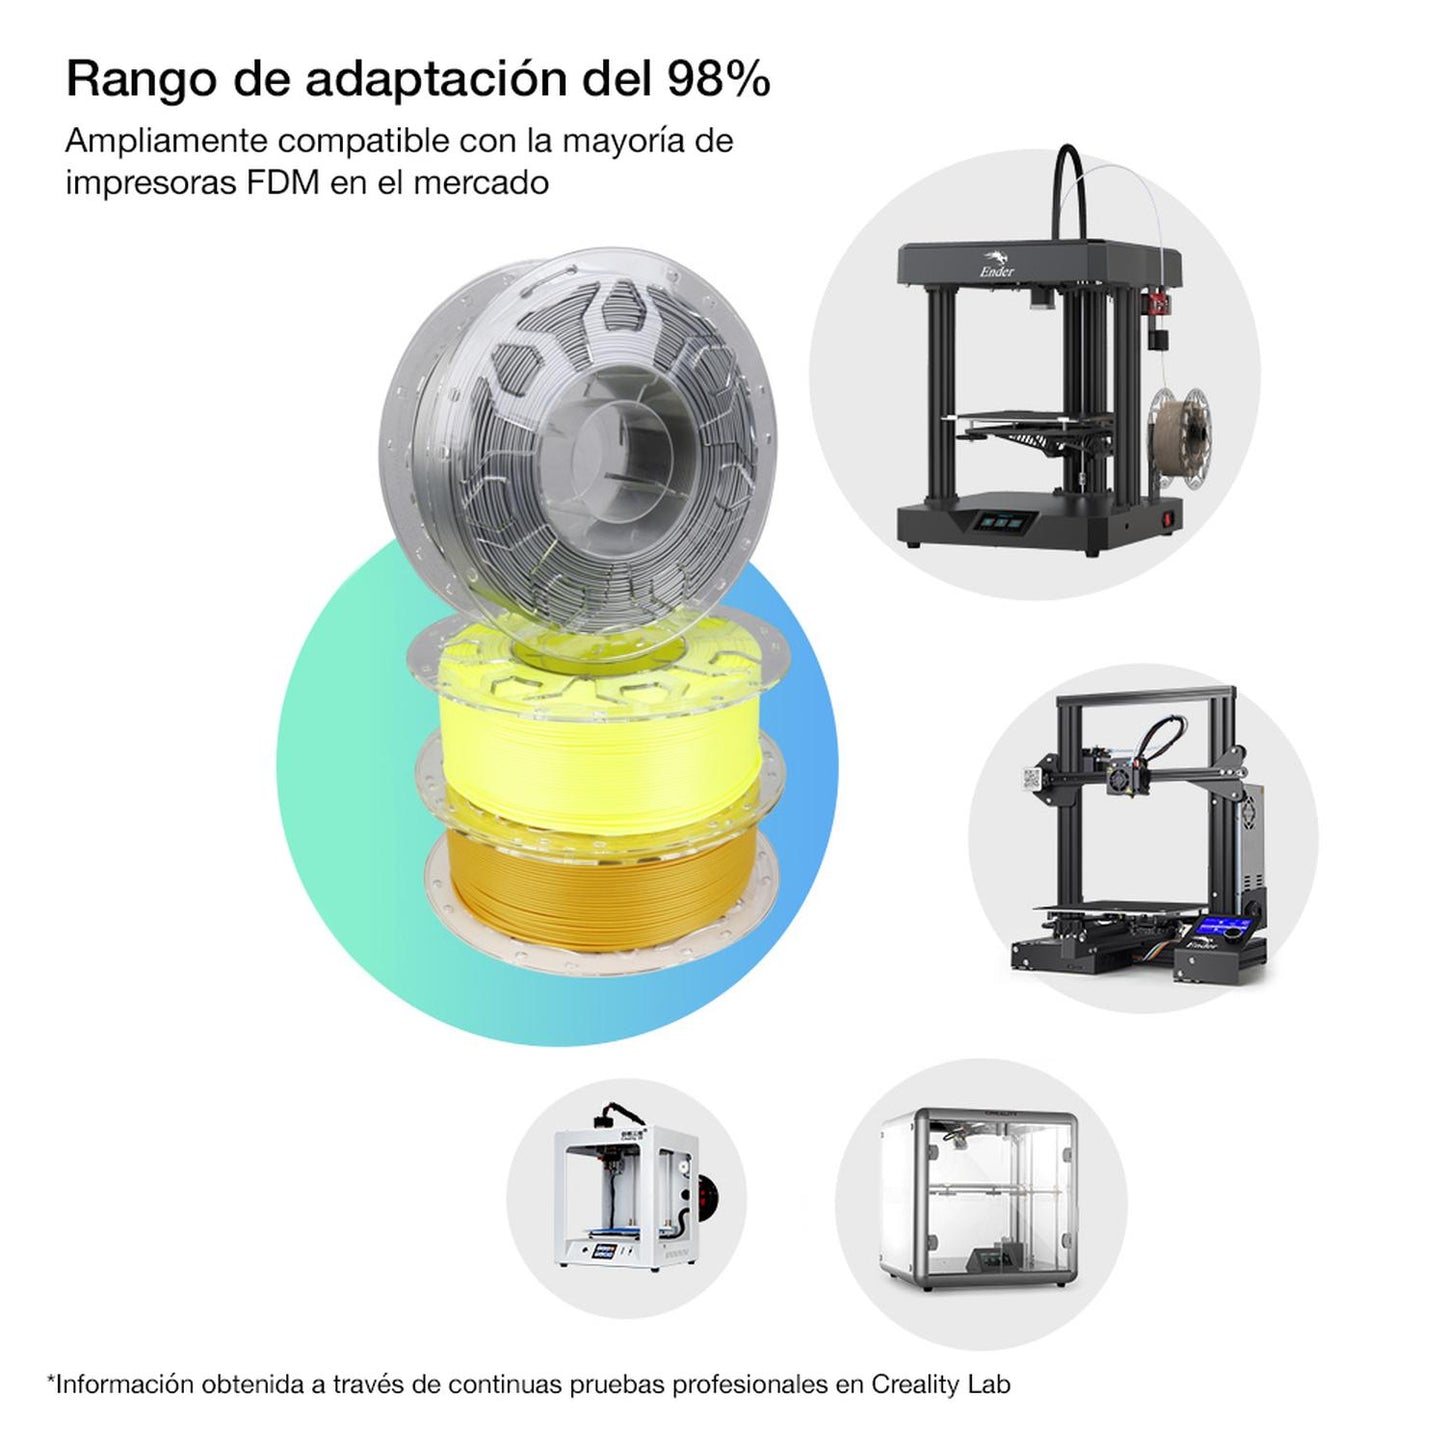 Filamento Creality CR-PLA Impresora 3D 1.75mm 1Kg Verde